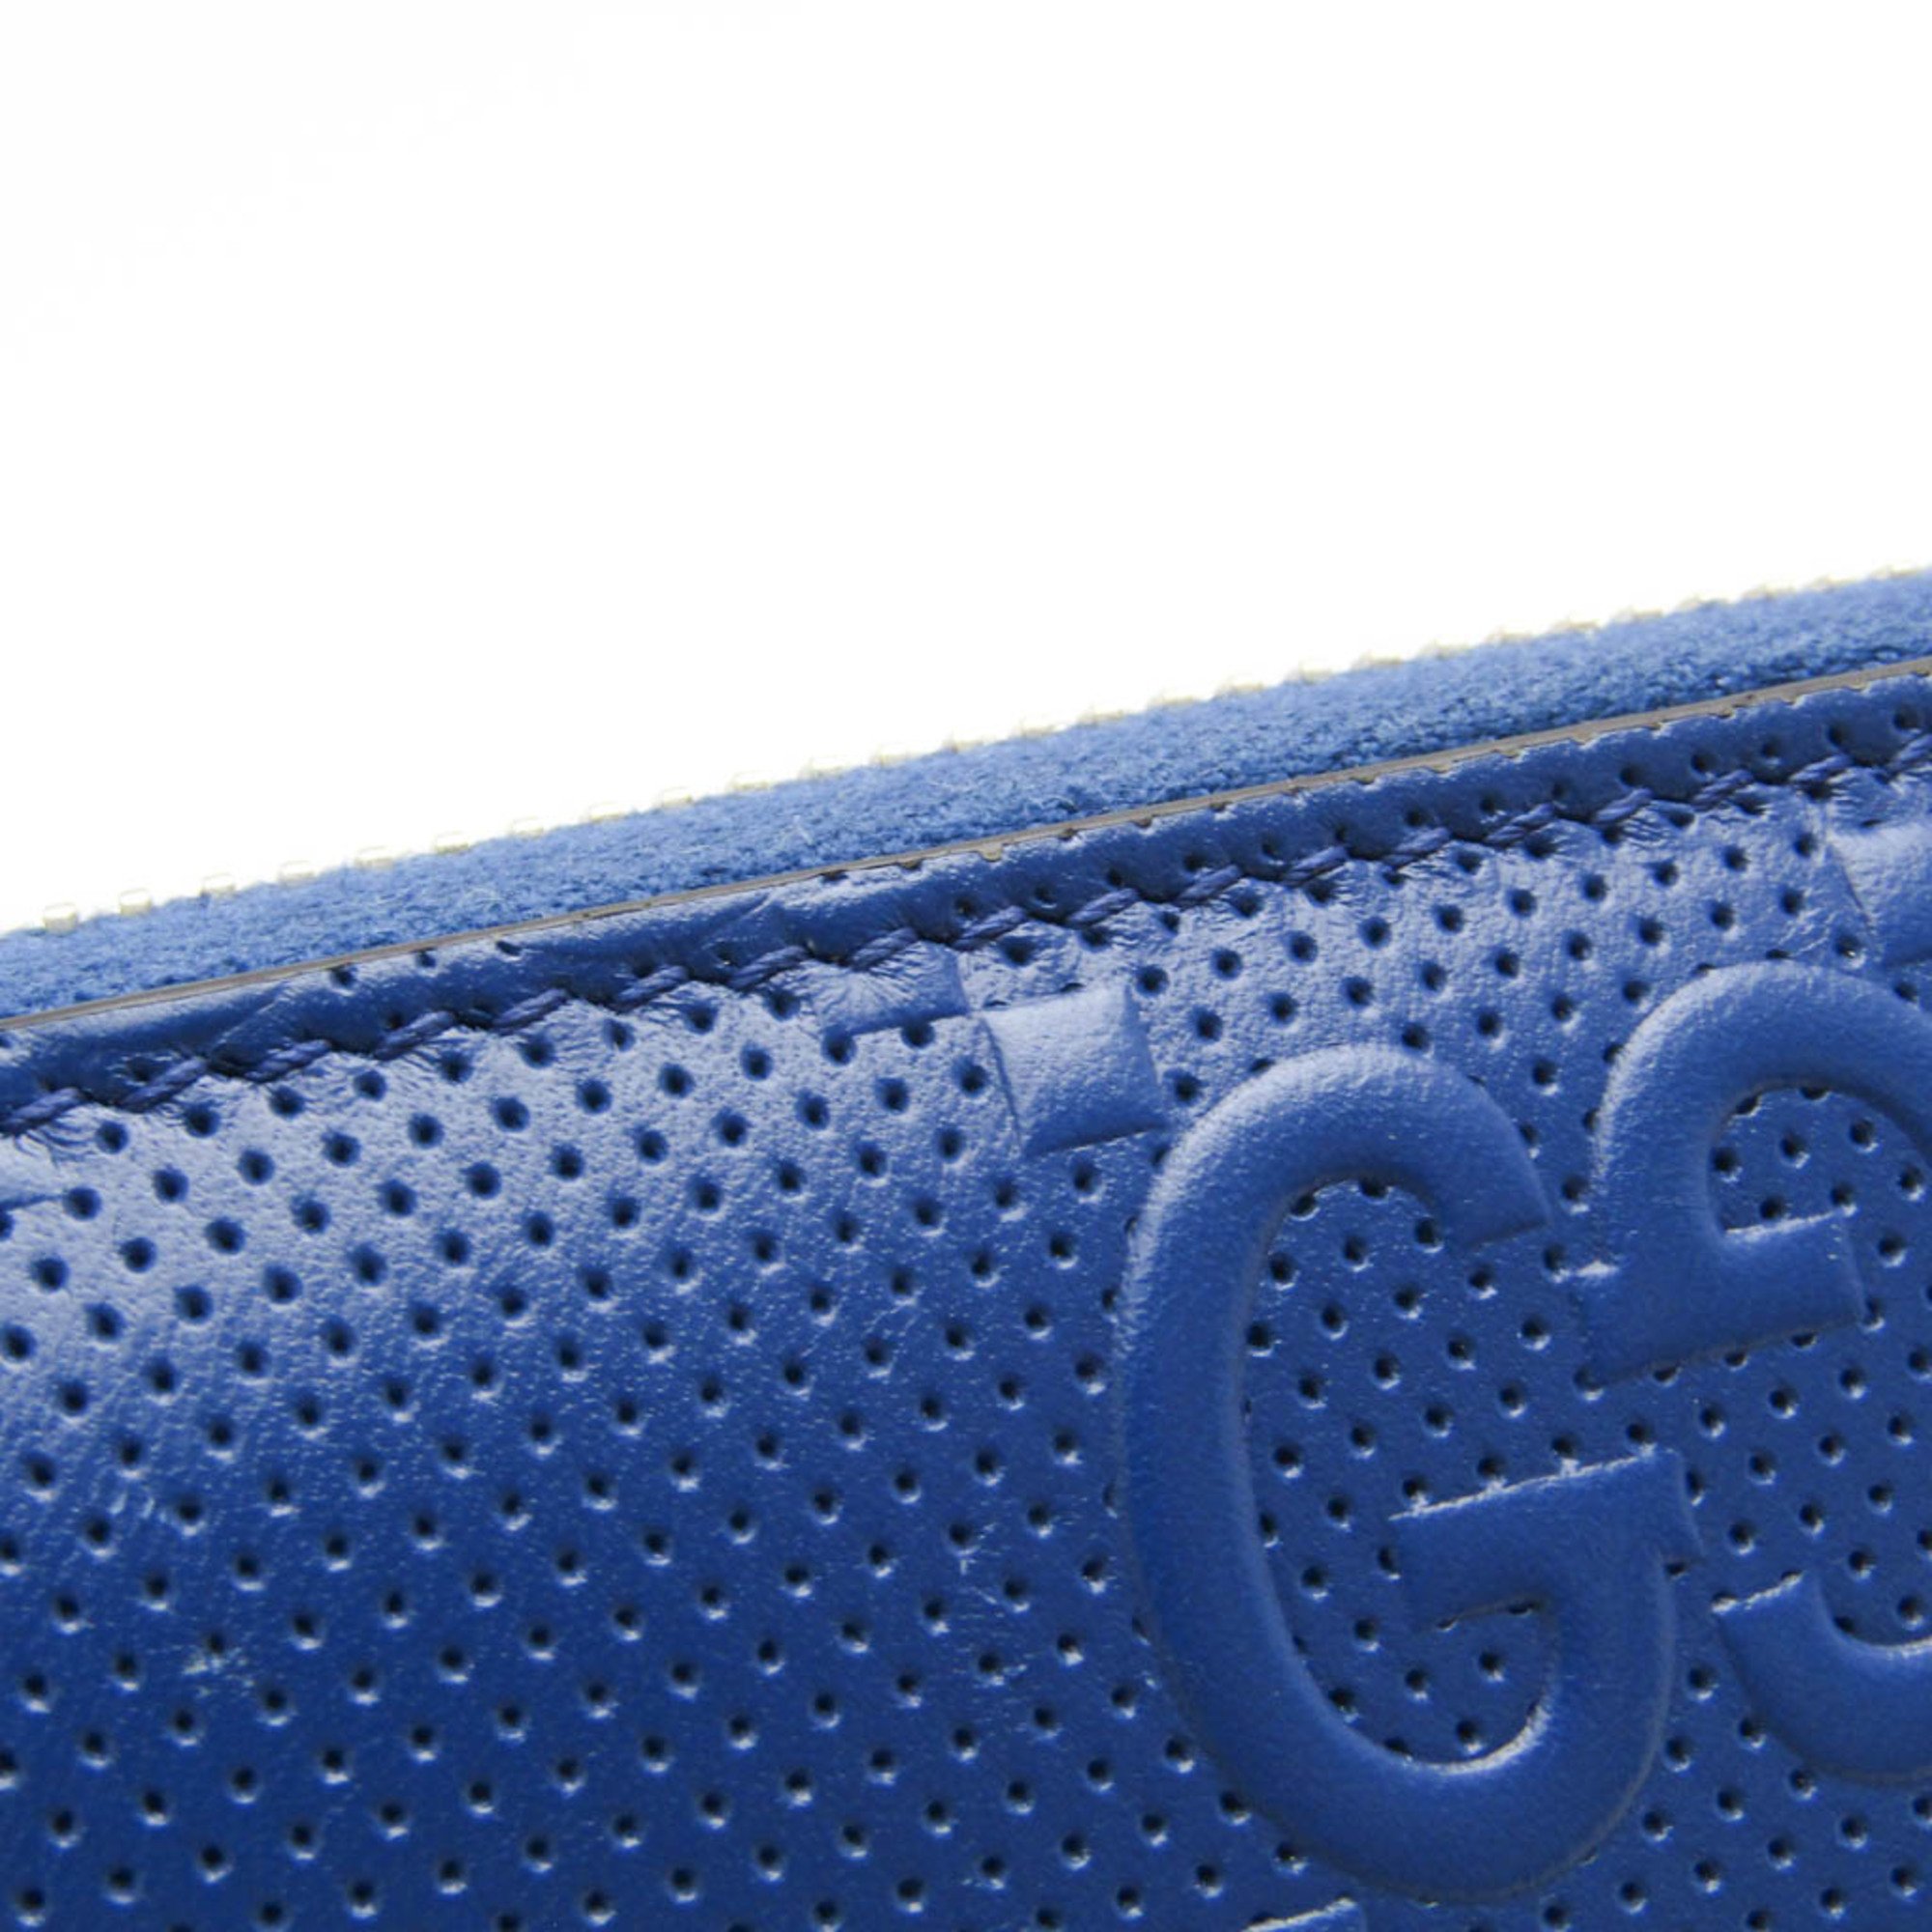 Gucci GG Embossed 625558 Men,Women Leather Long Wallet (bi-fold) Navy